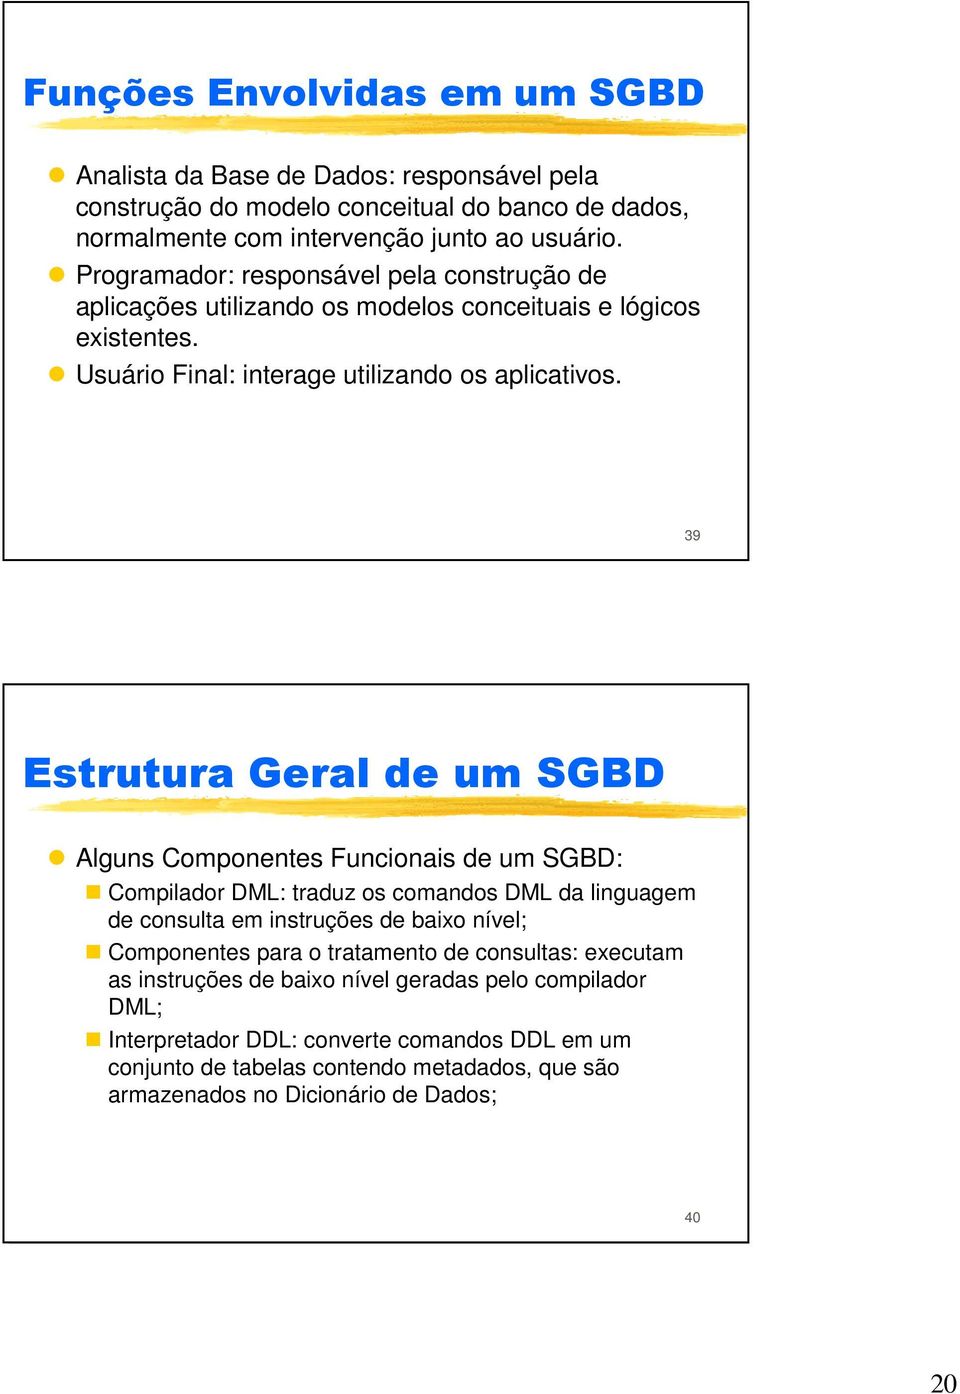 39 Estrutura Geral de um SGBD Alguns Componentes Funcionais de um SGBD: Compilador DML: traduz os comandos DML da linguagem de consulta em instruções de baixo nível; Componentes para o